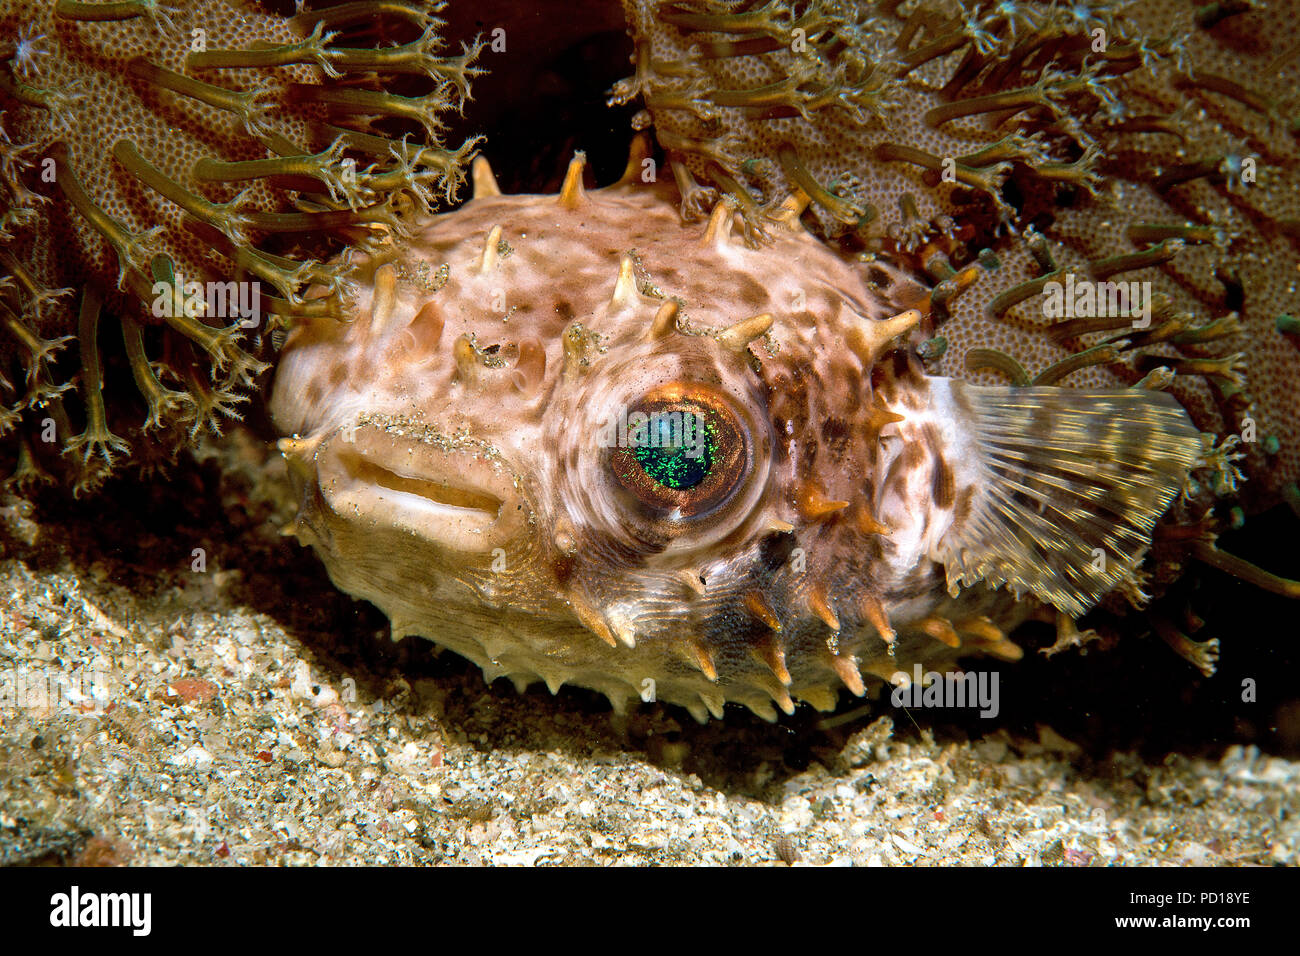 Porcupinefish arrotondati o Shortspine Porcupinefish (Cyclichthys orbicularis) che stabilisce tra coralli, isola di Komodo, Indonesia Foto Stock